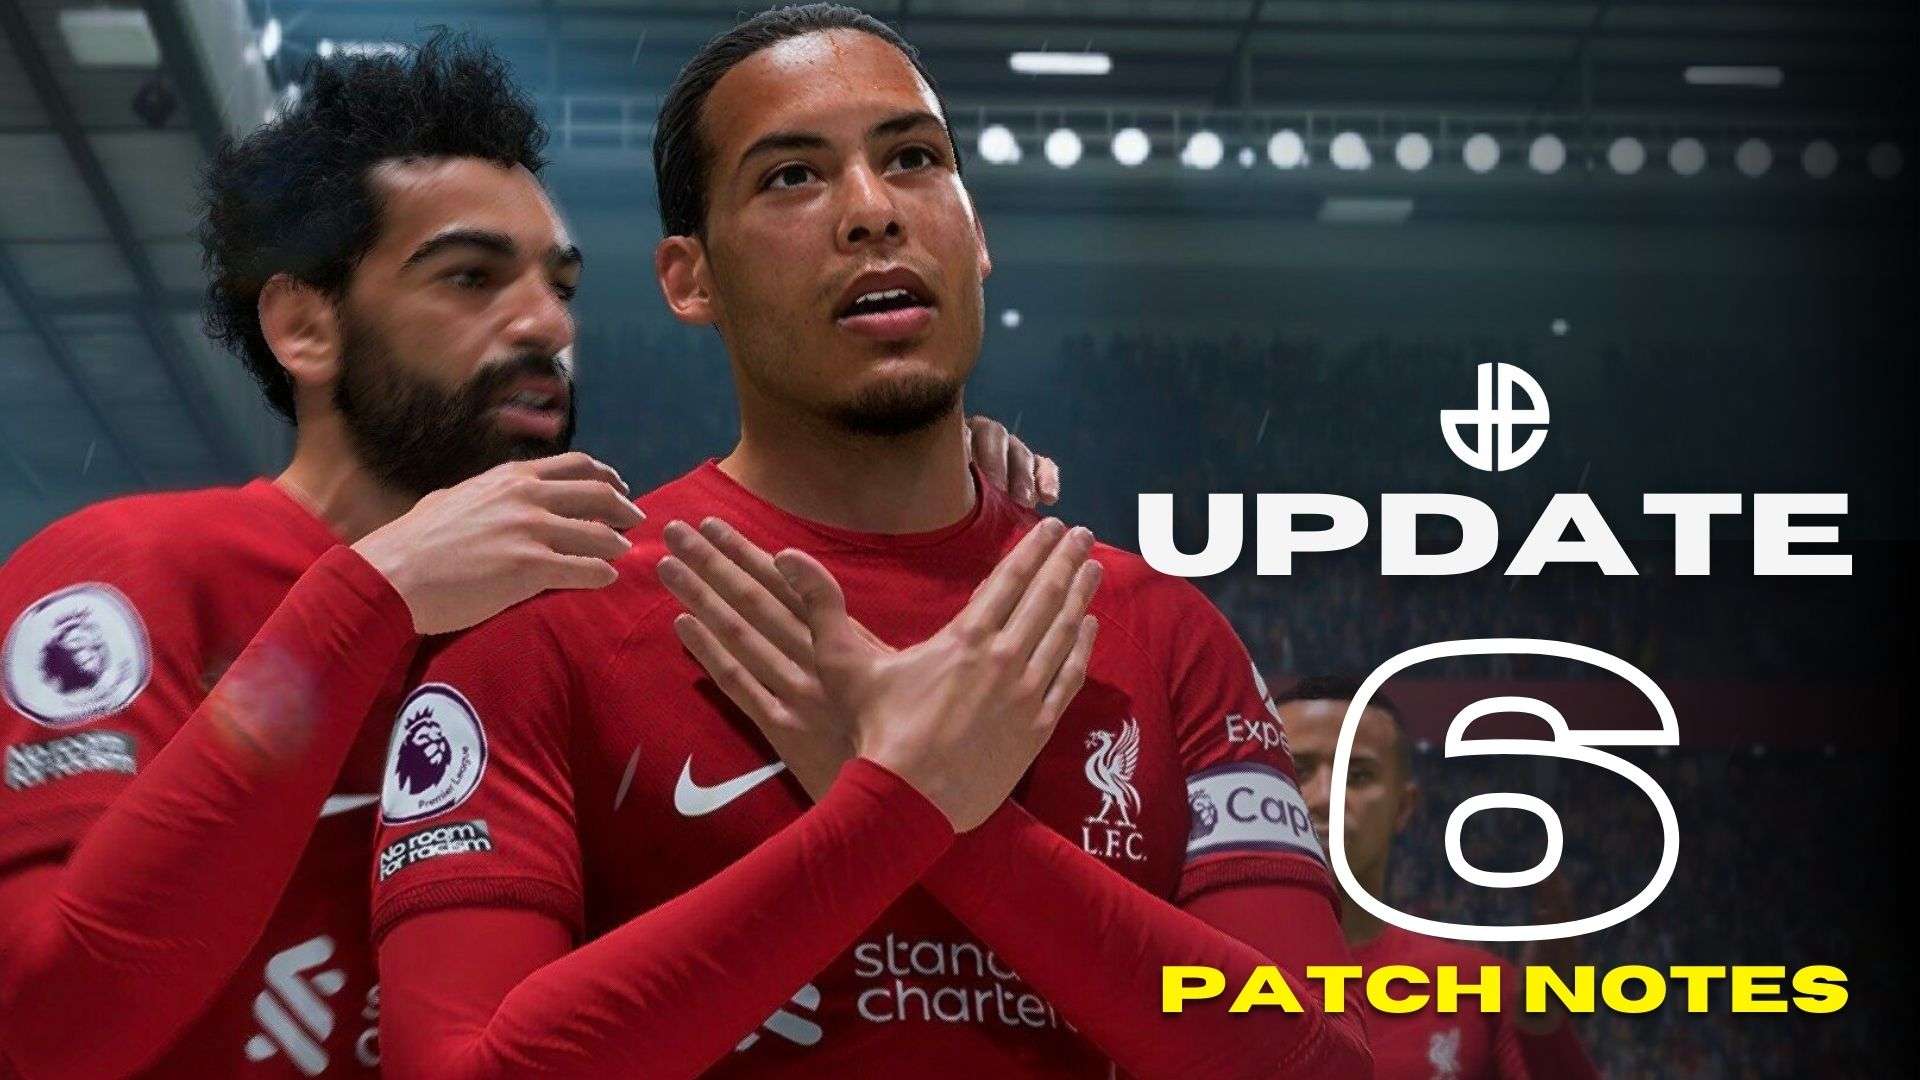 Virgil Van Dijk and Salah in FIFA 23 next to patch notes text